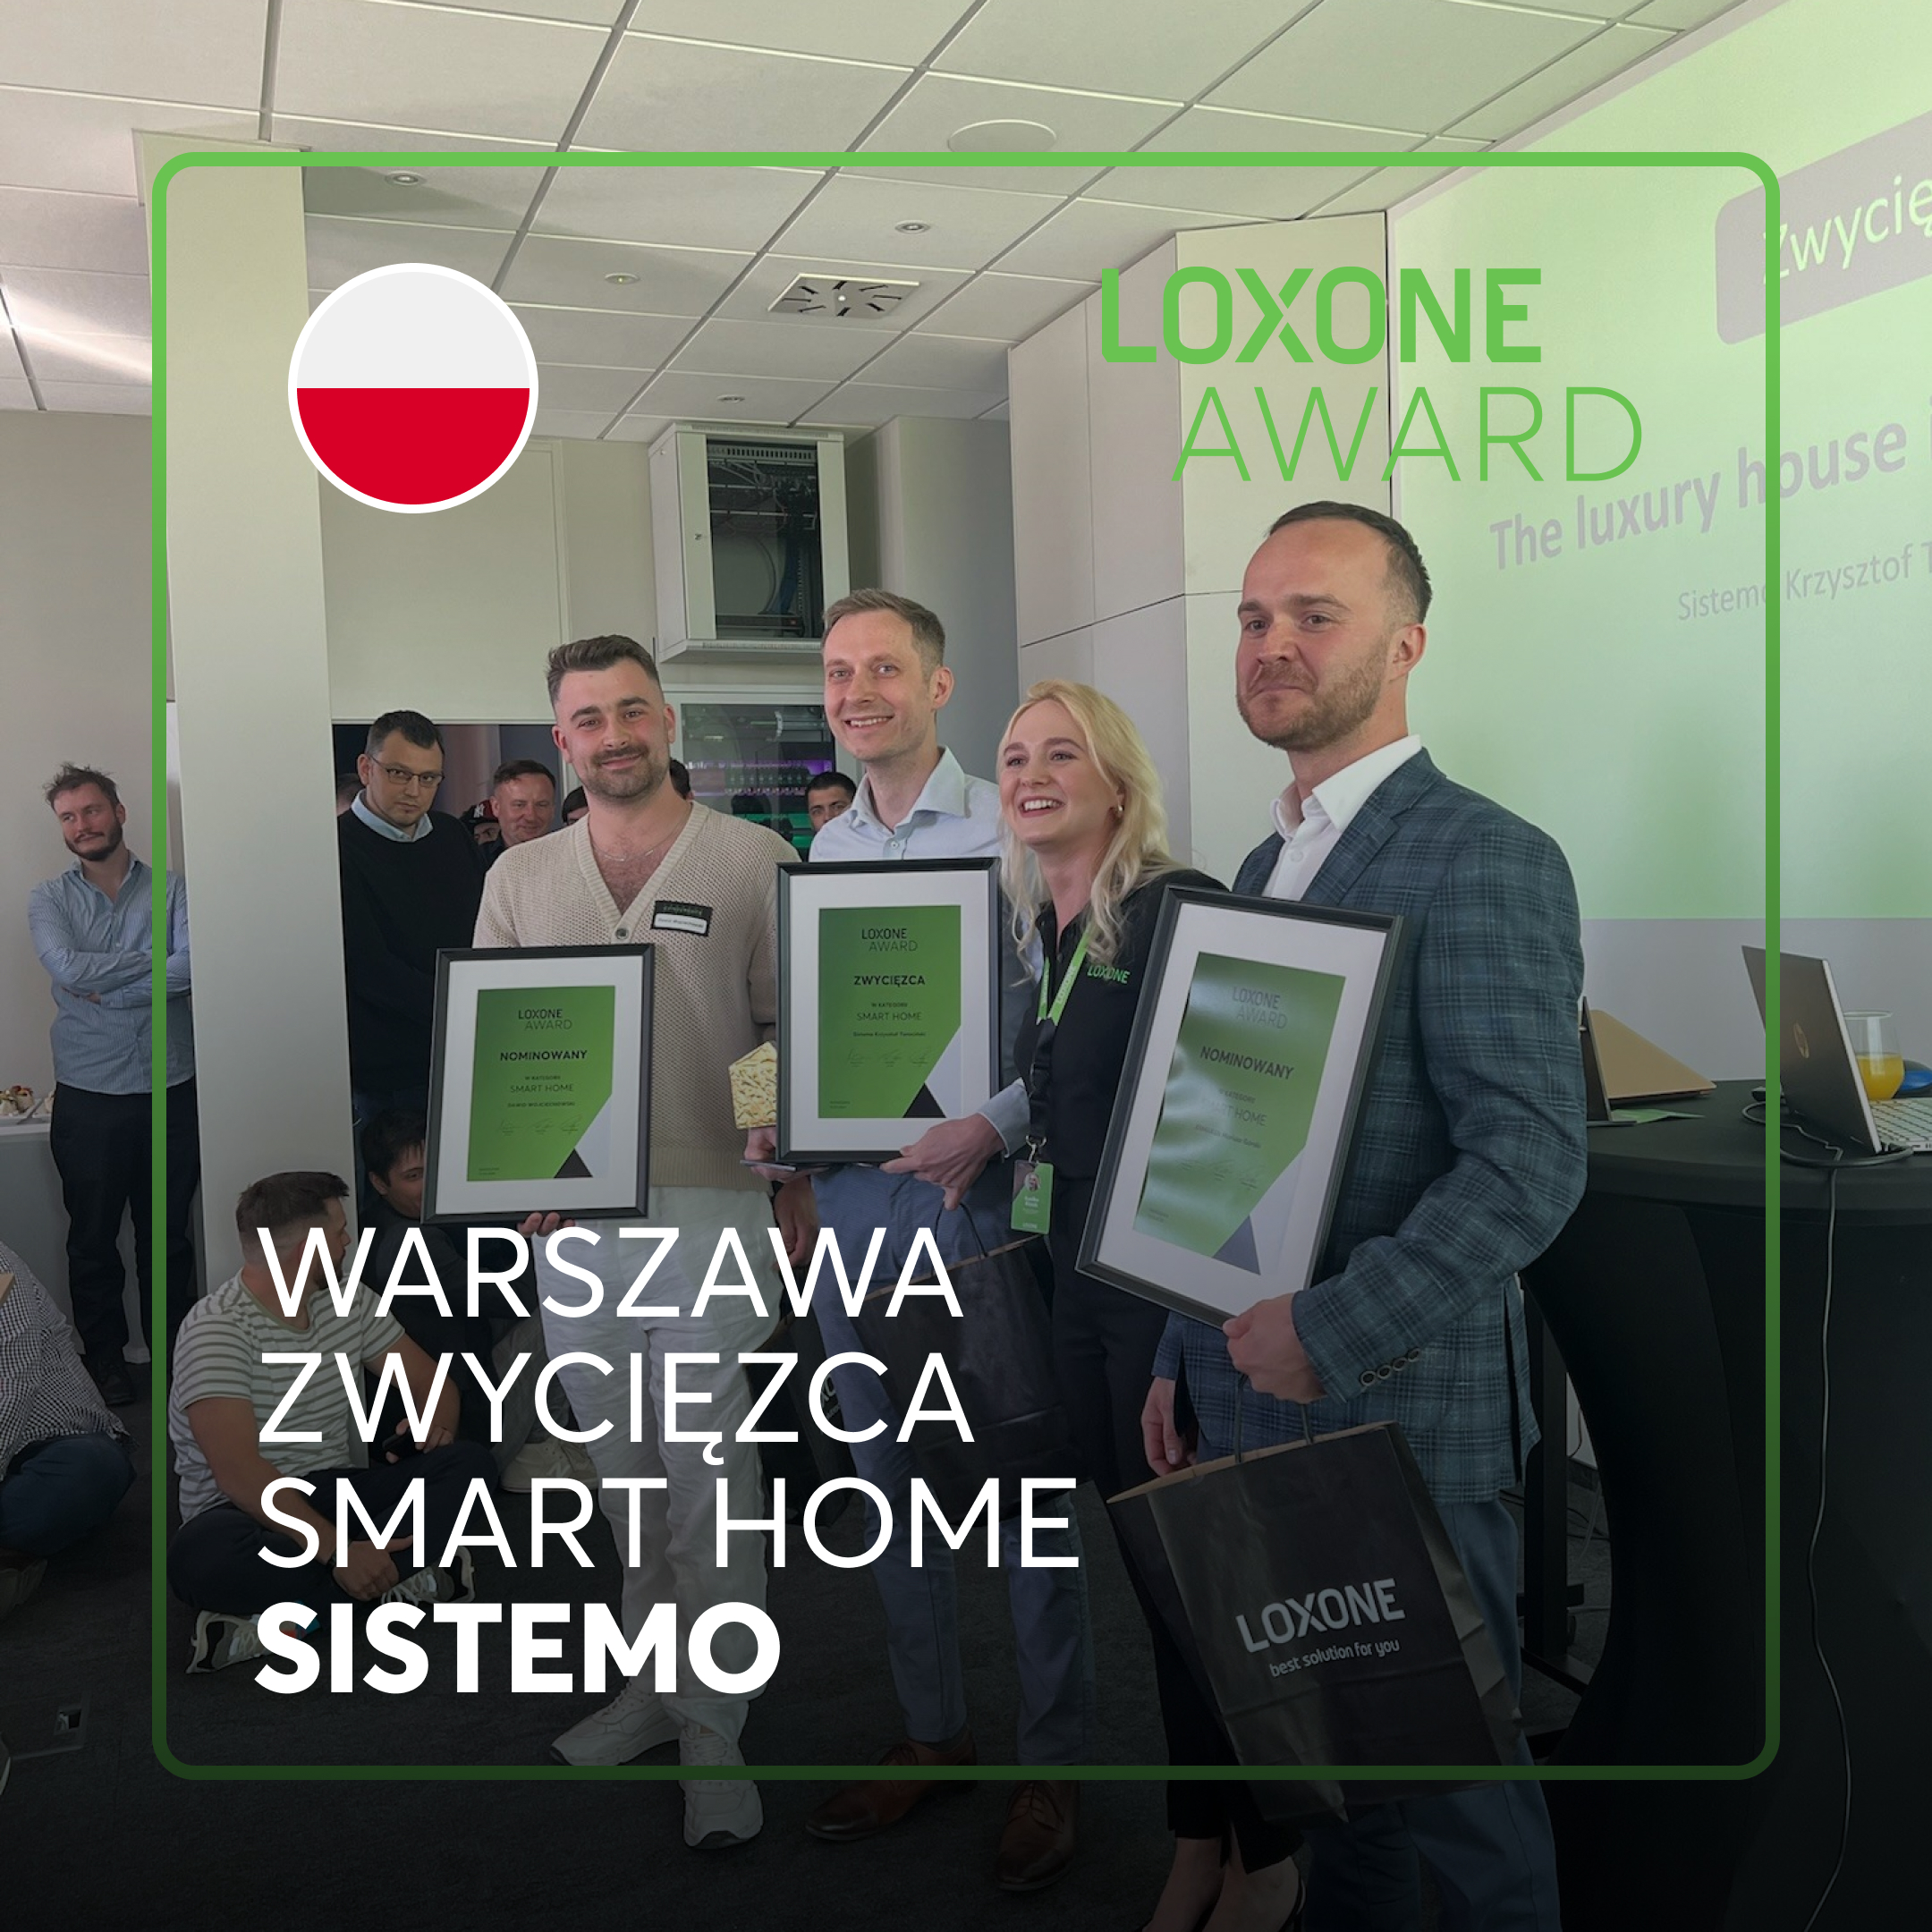 Zwycięzca z Warszawy w kategorii smart home